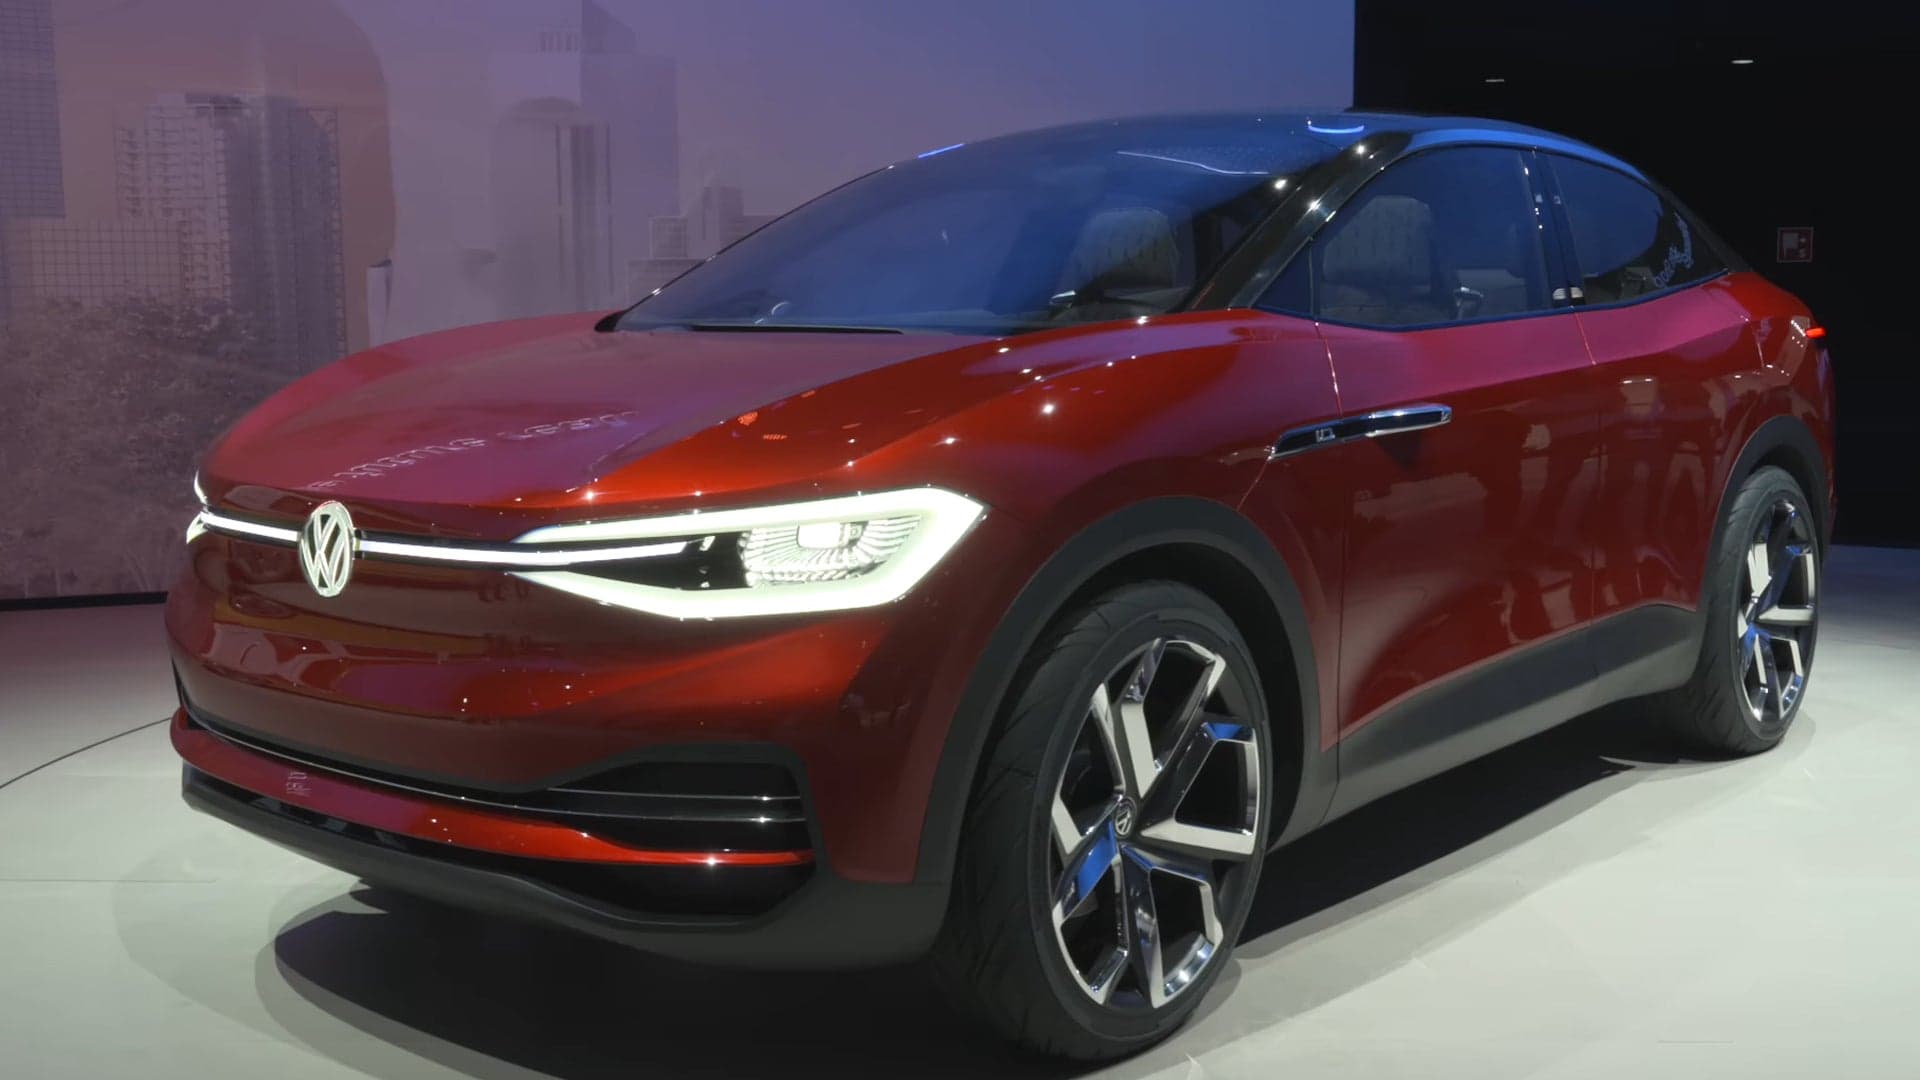 Volkswagen Refines the Crozz Electric Car Prototype for the Frankfurt Motor Show